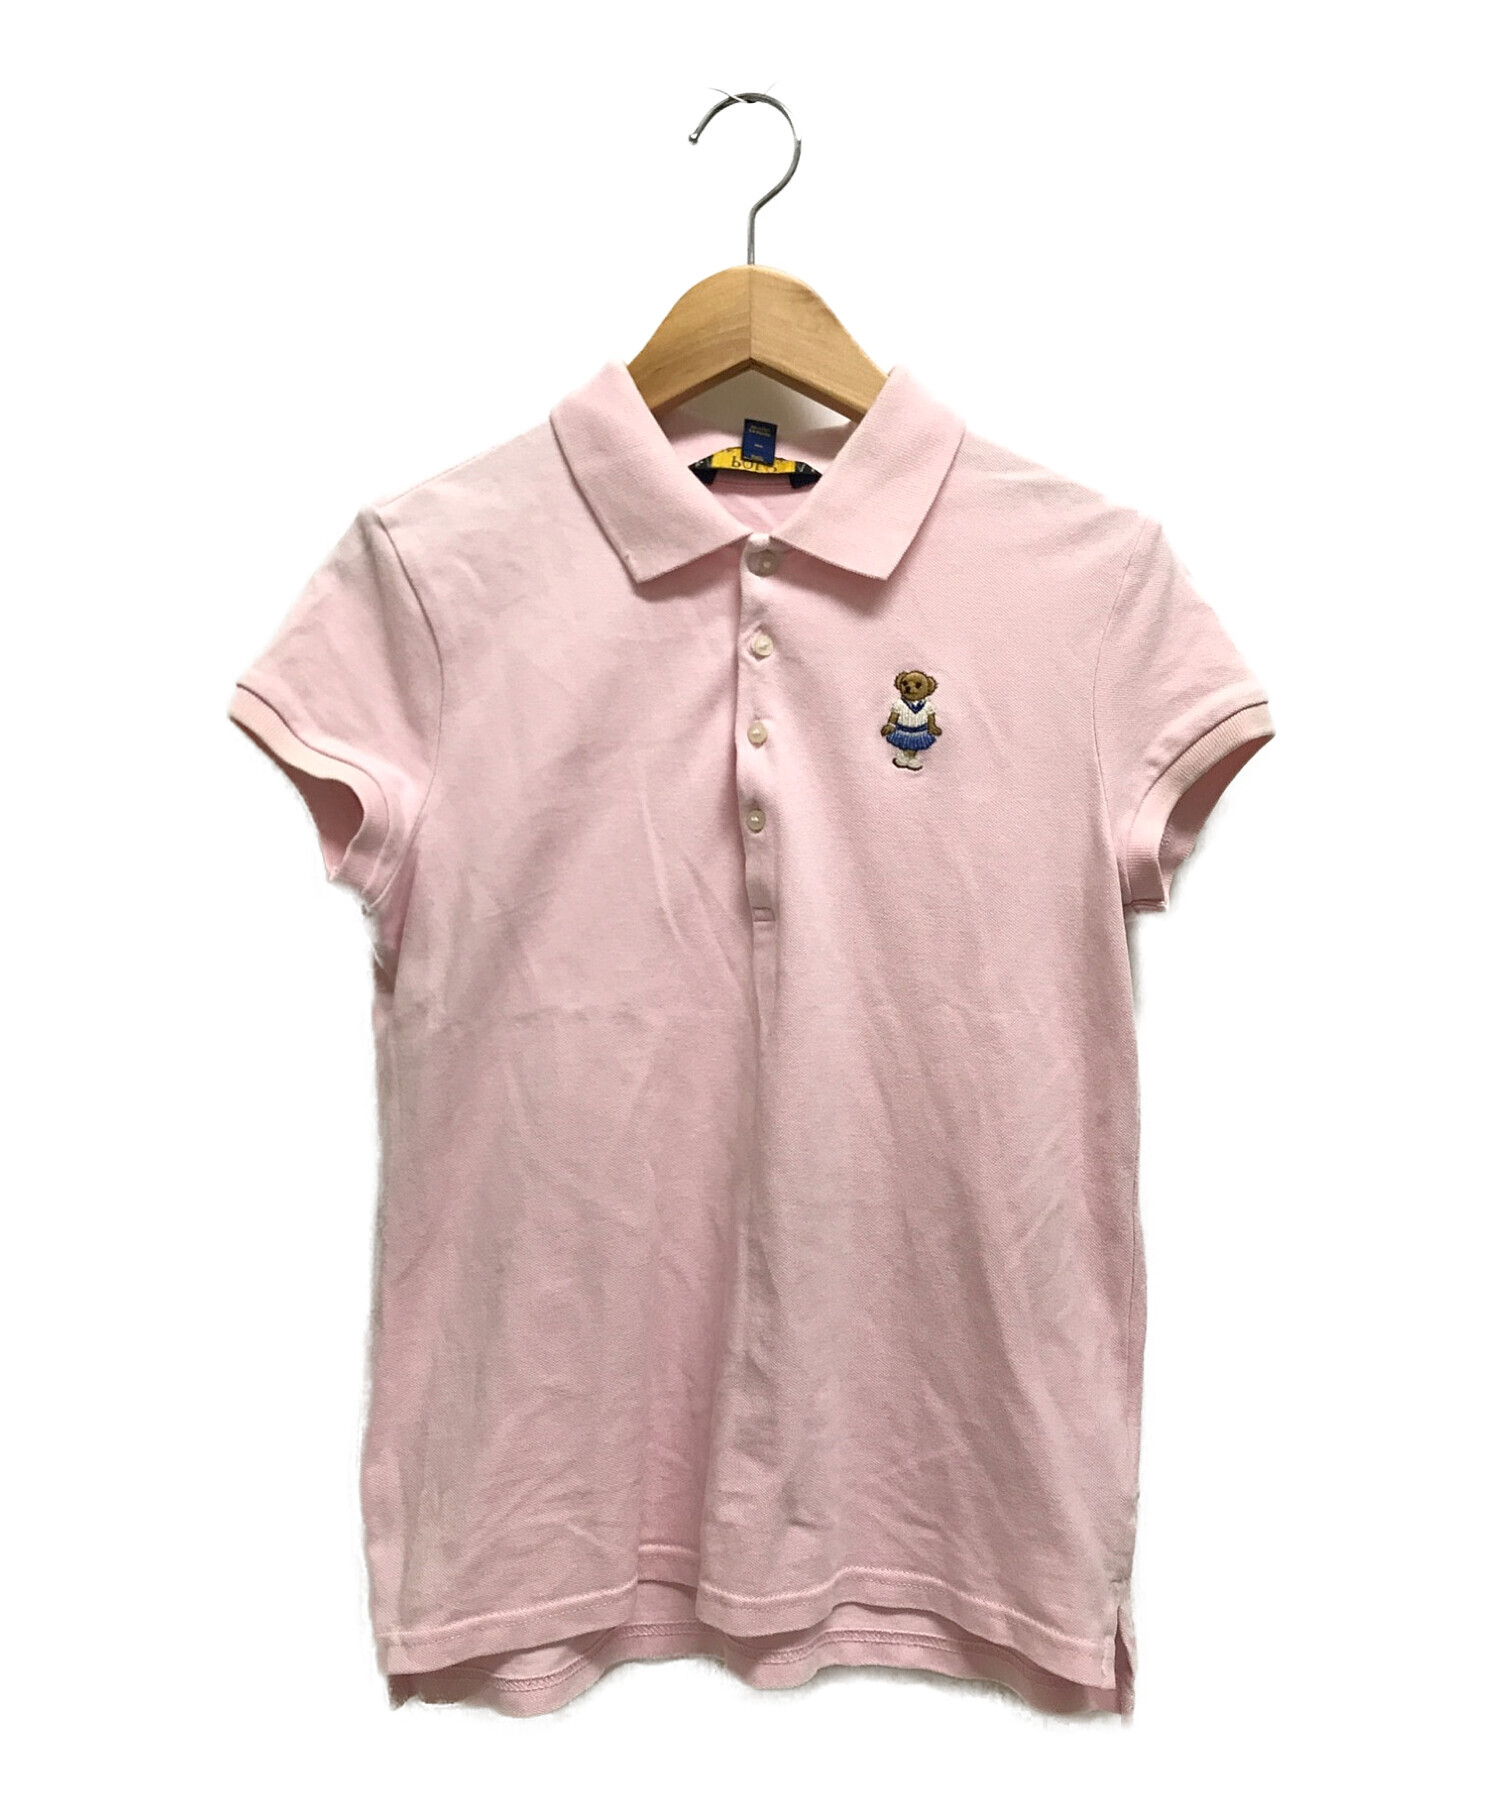 ラルフローレン ポロシャツ レディース M165 92A ピンク - ポロシャツ